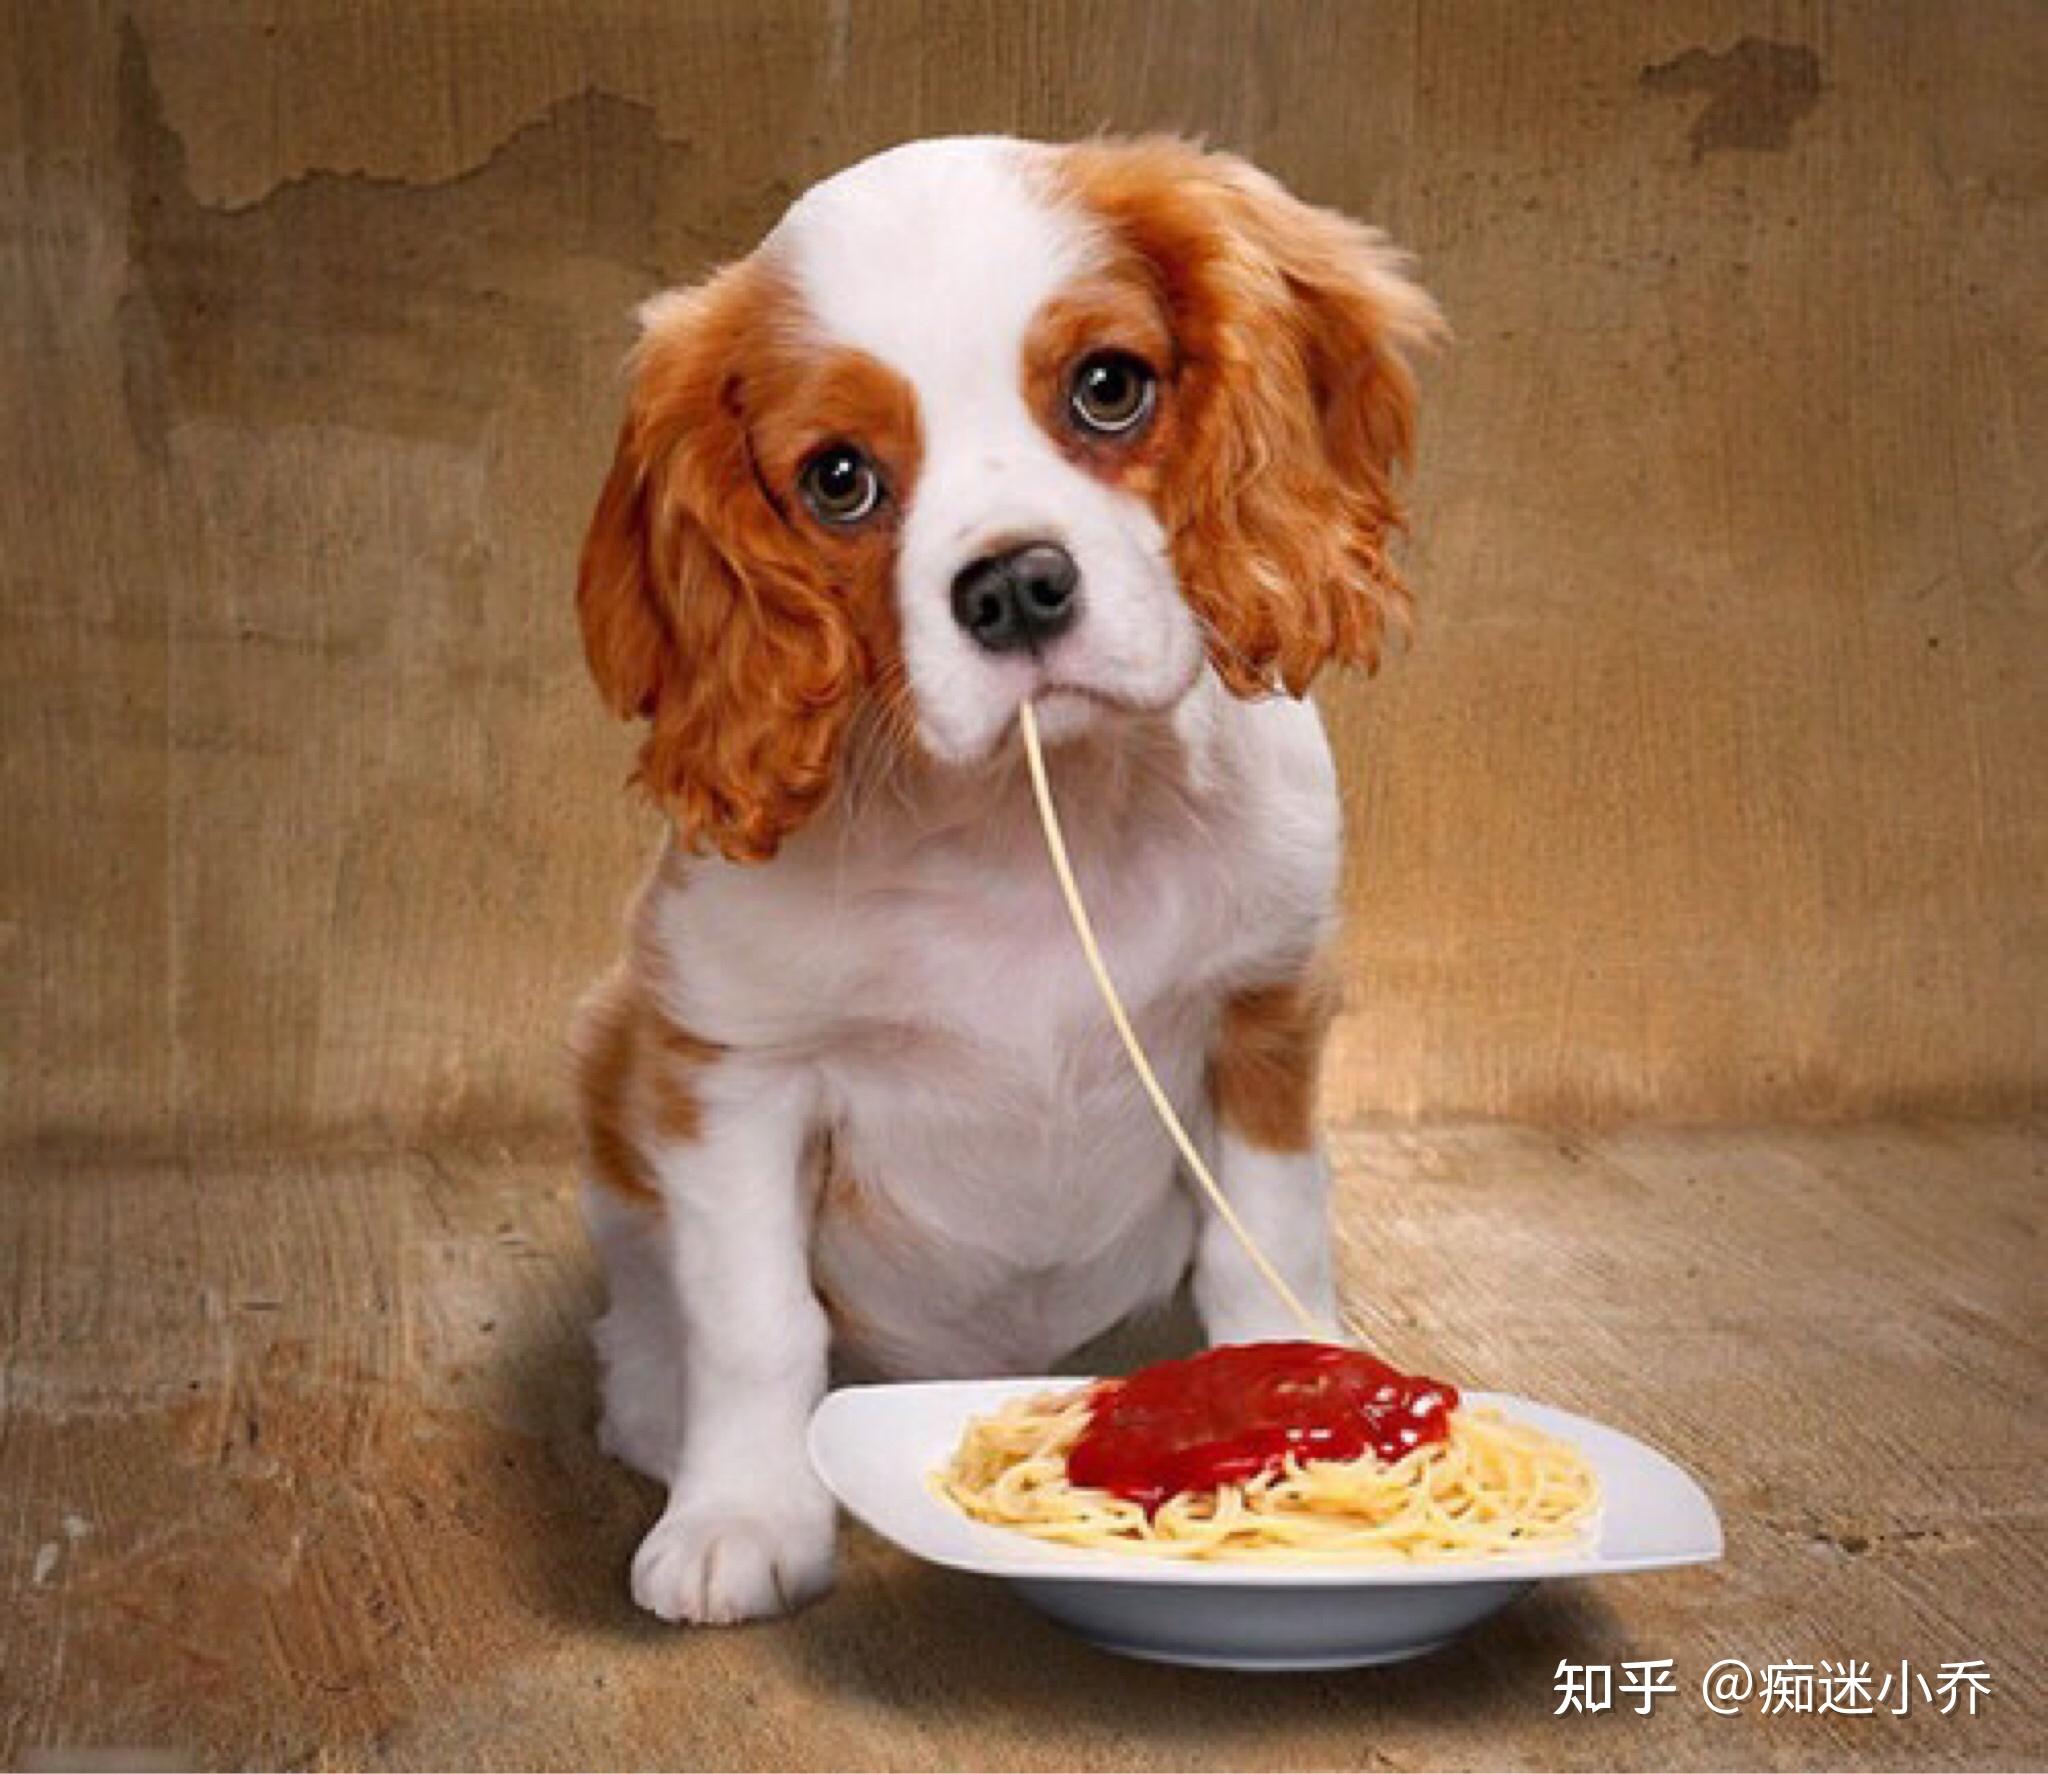 狗坐一桌吃饭的照片图片